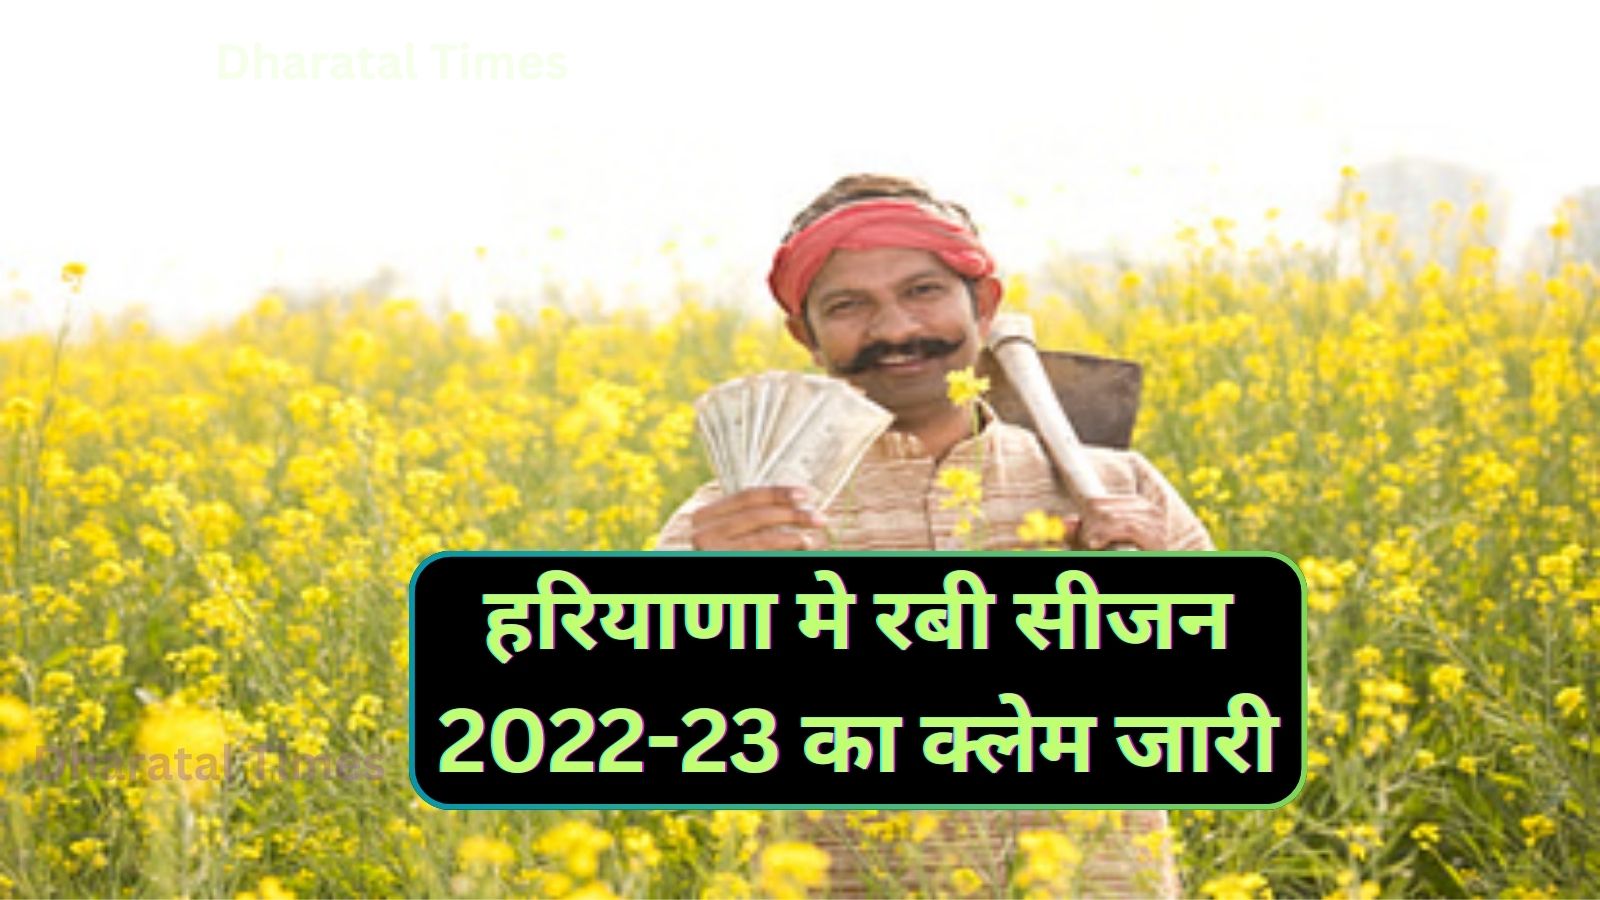 Rabi Season Claim Haryana:हरियाणा मे रबी सीजन 2022-23 का क्लेम जारी,सिरसा के किसानों को मिला सबसे ज्यादा क्लेम